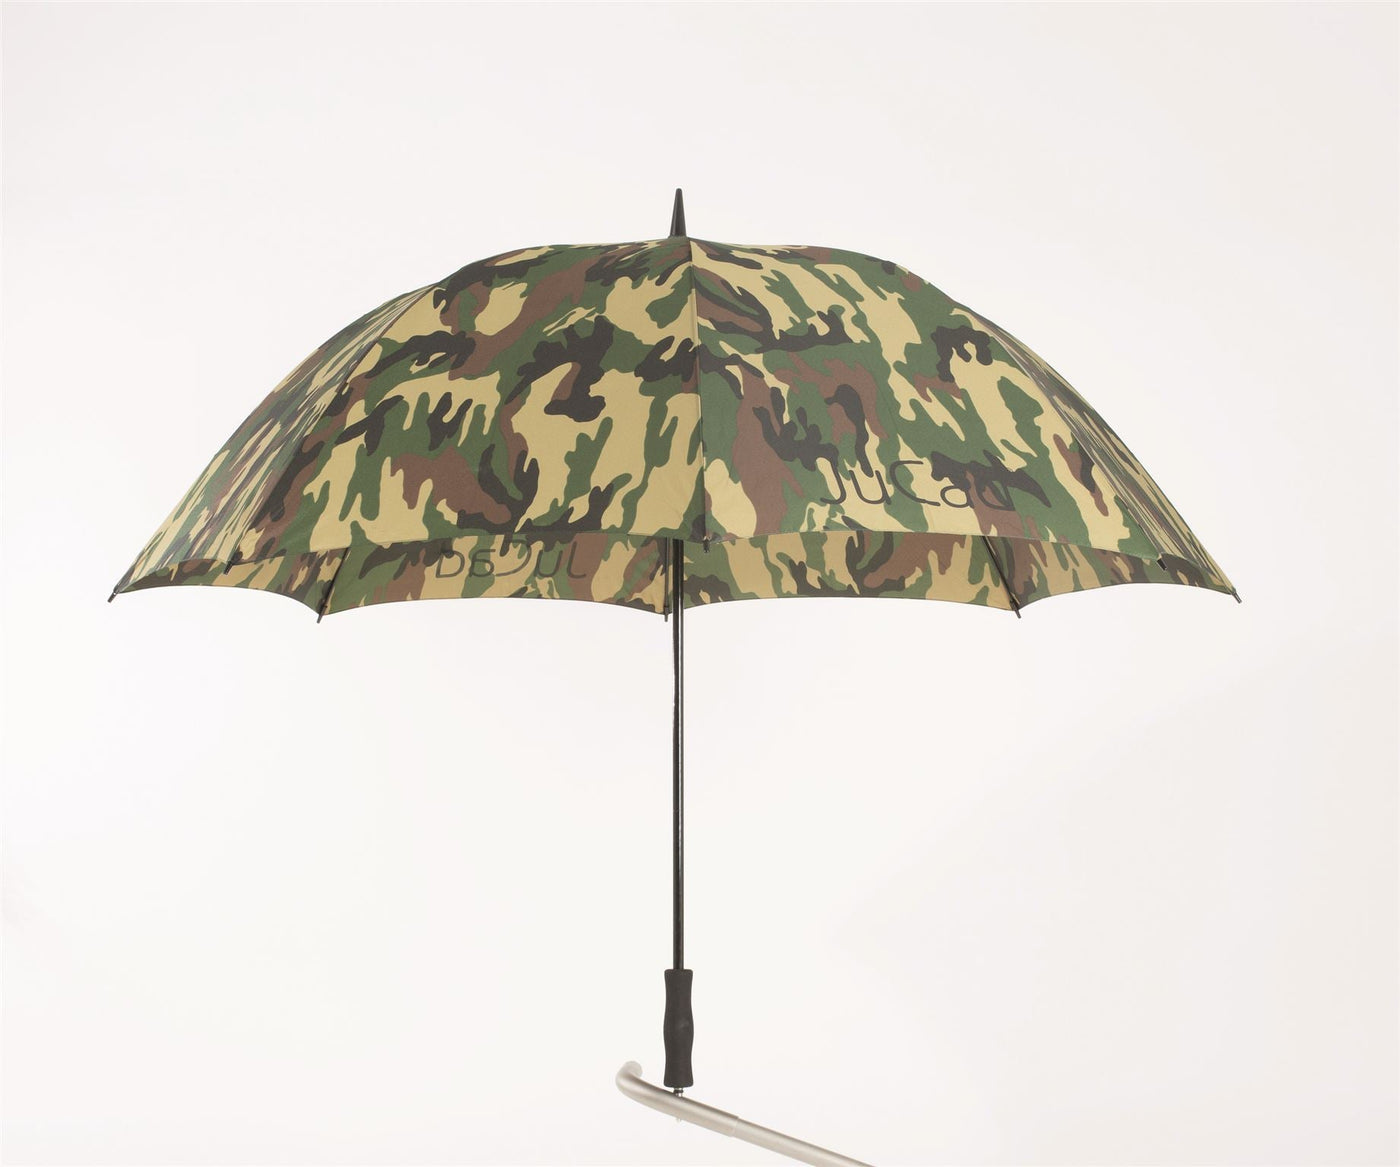 Parapluie de golf JuCad sans tige de parapluie